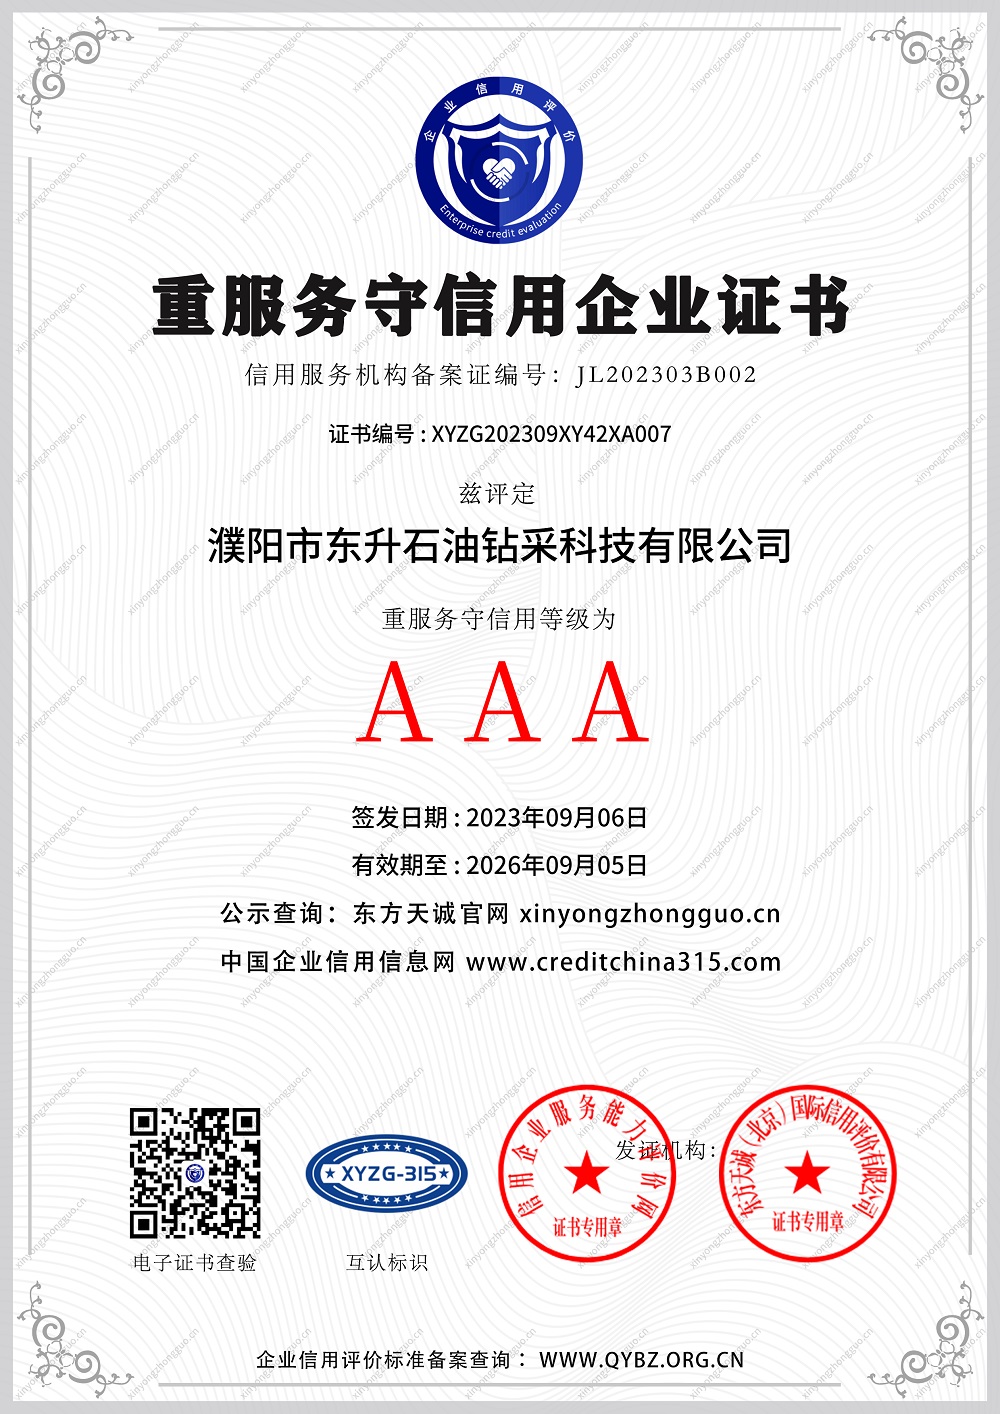 AAA重服务守信用企业证书